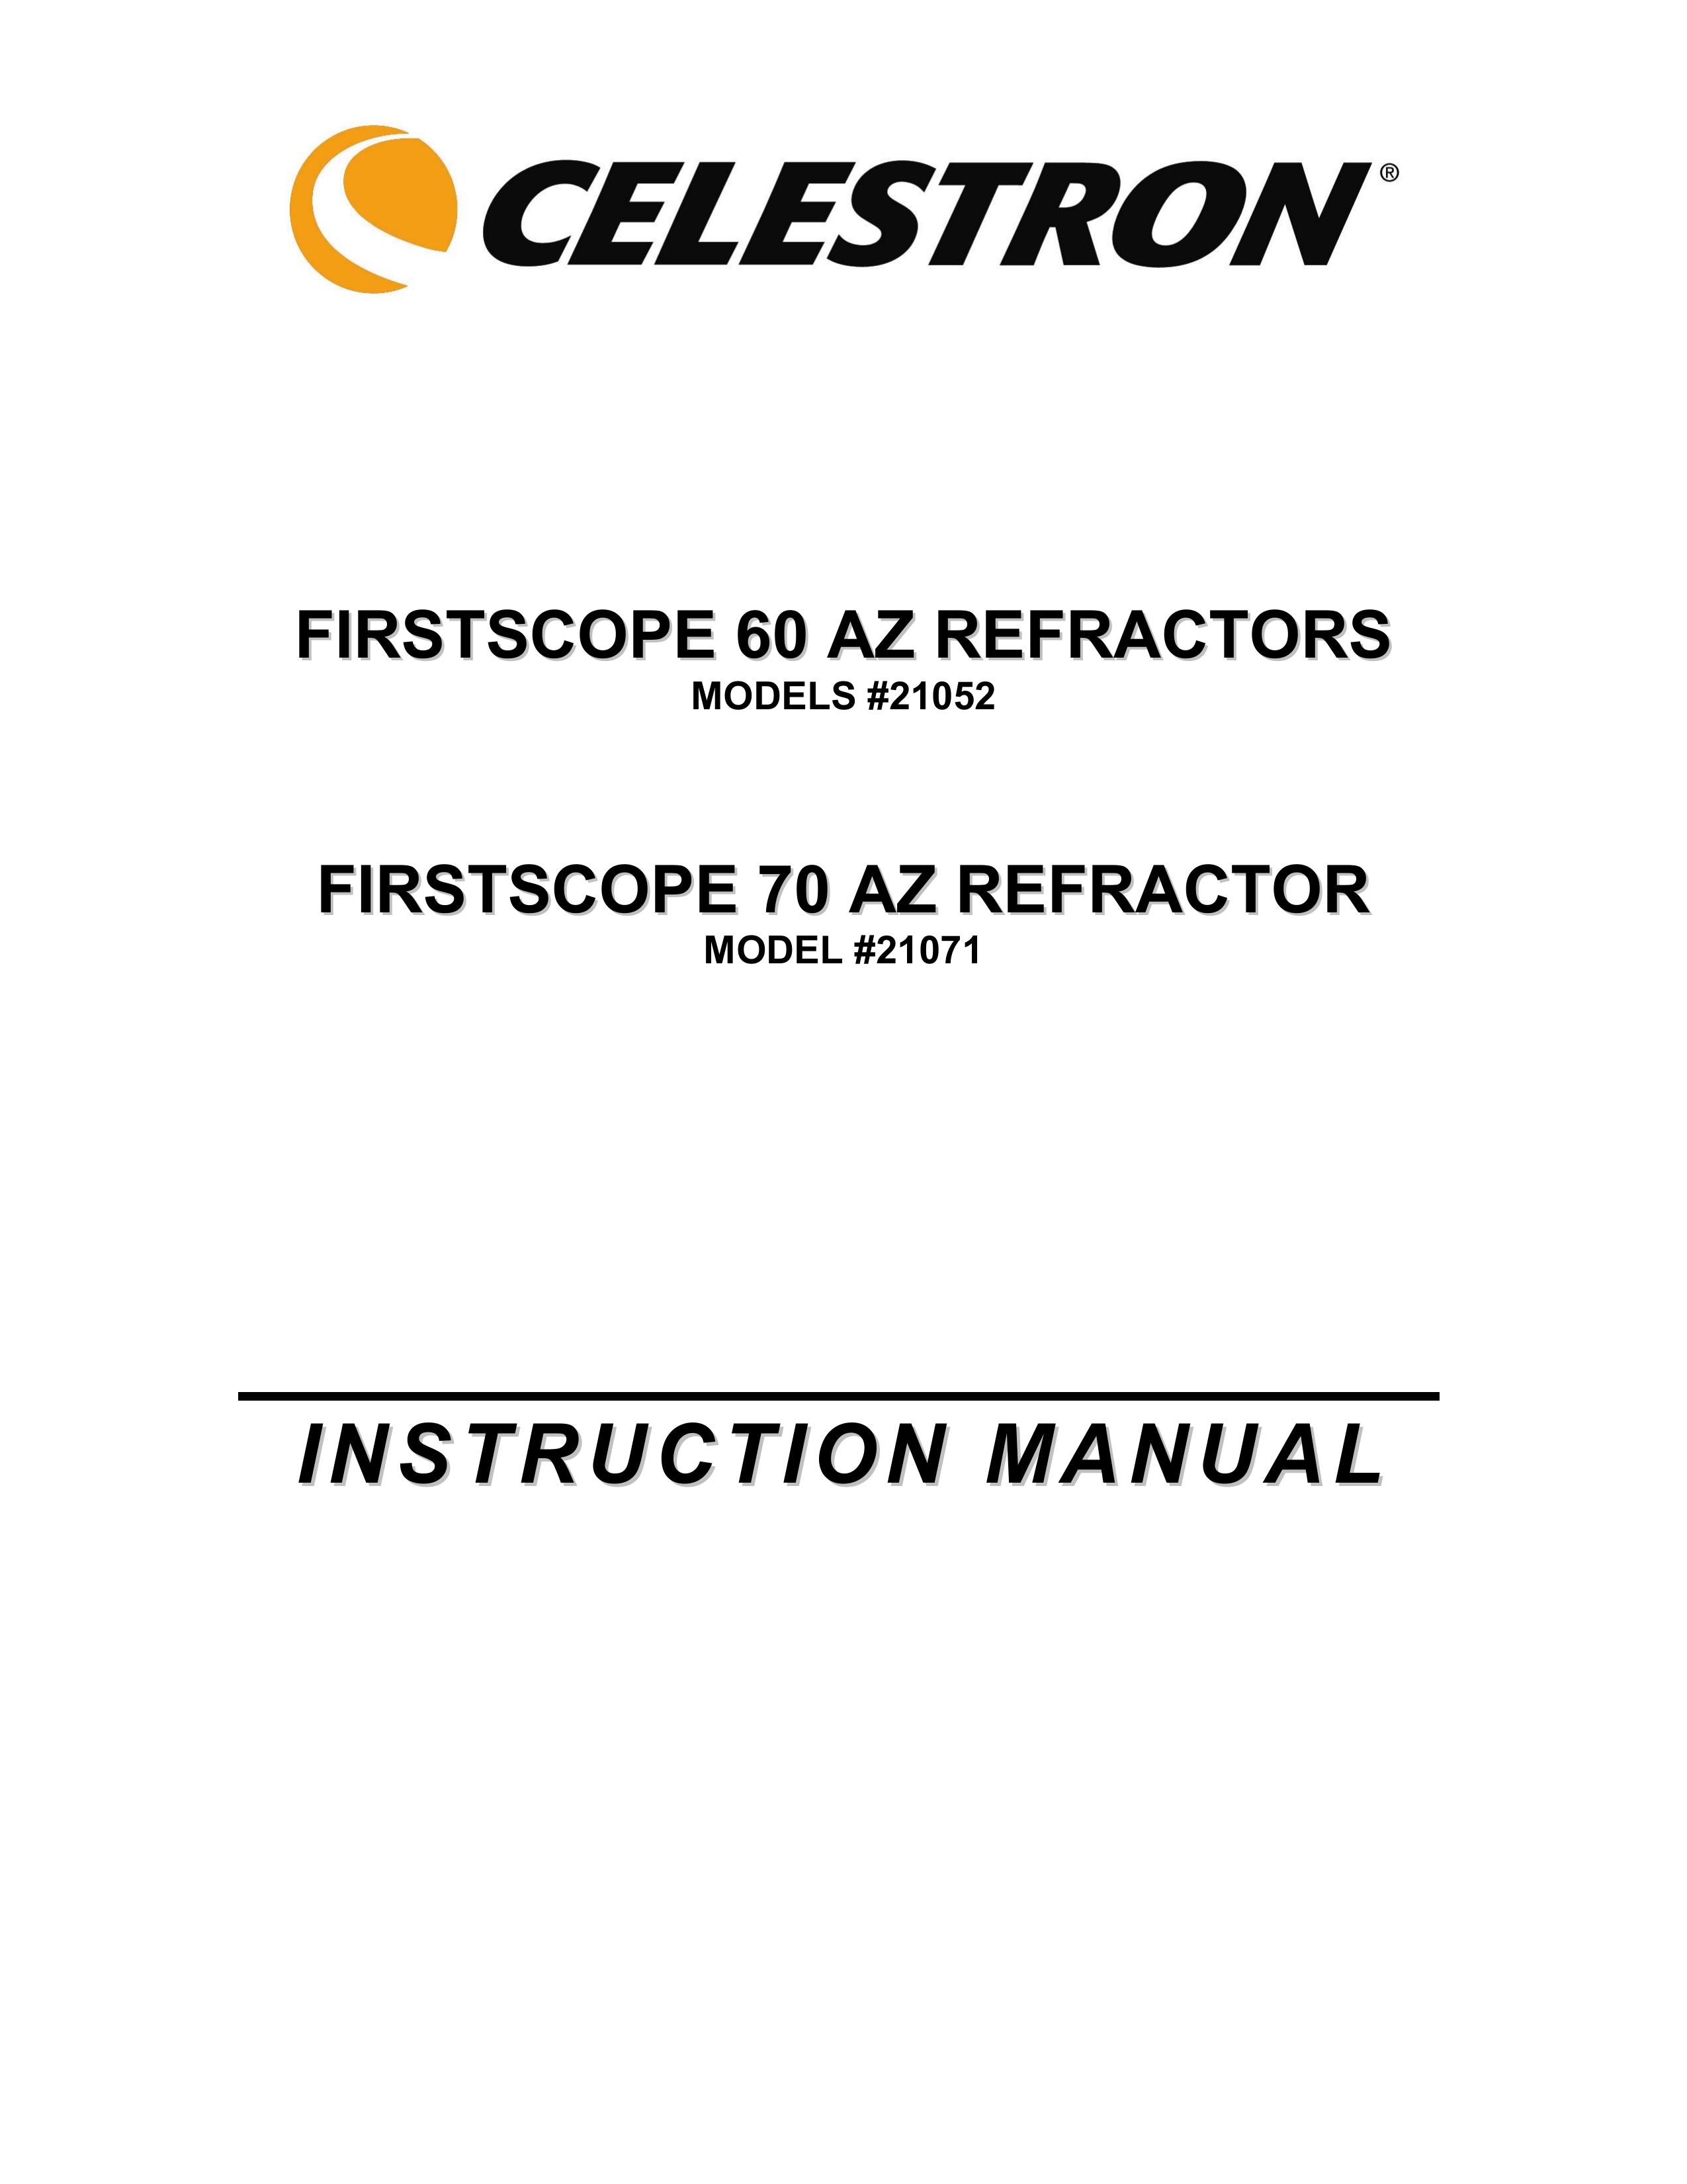 Celestron 21052 Telescope User Manual